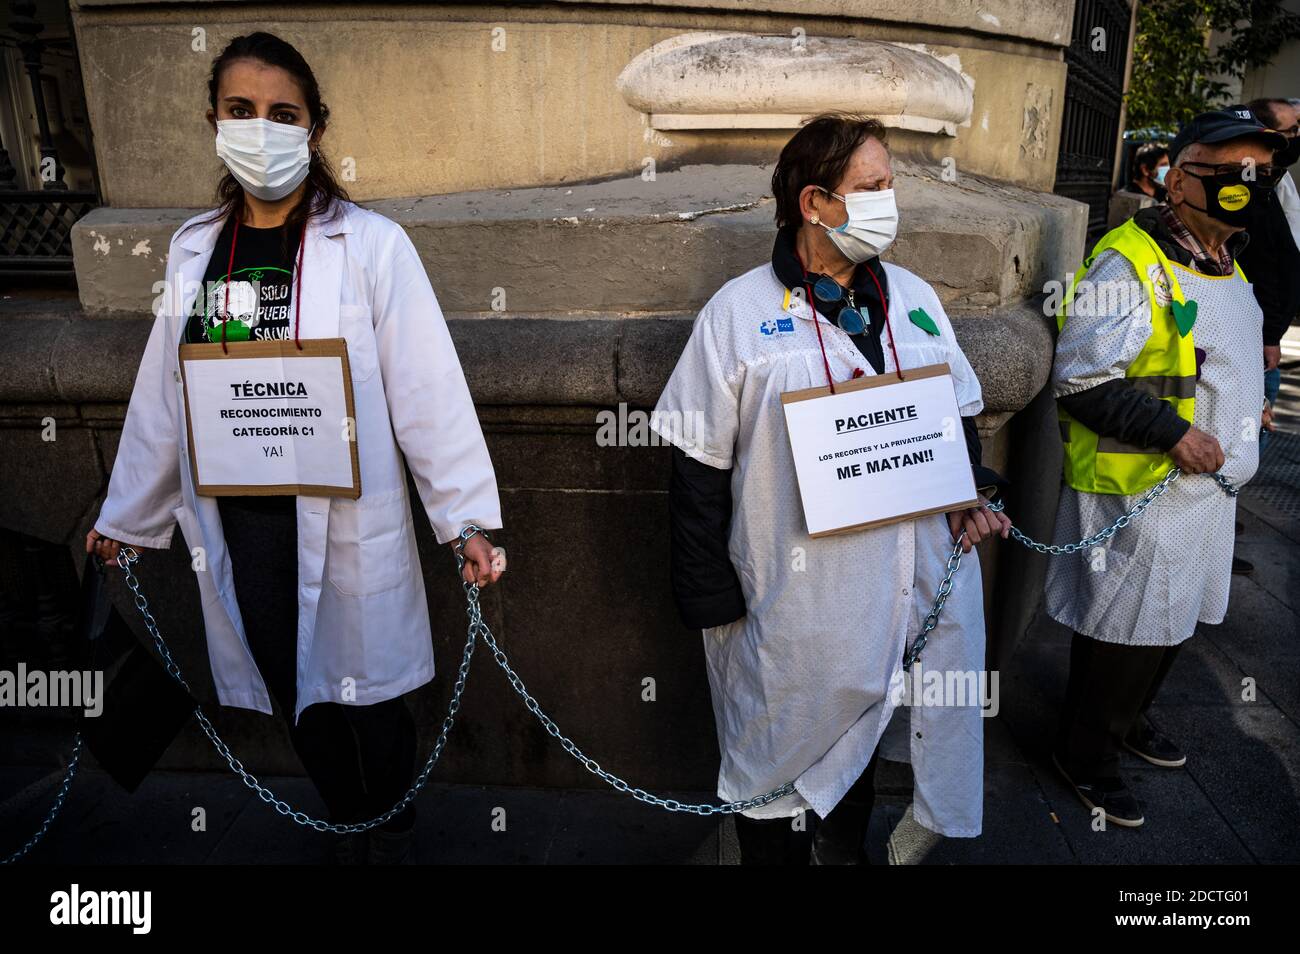 Madrid, Spanien. November 2020. Vertreter der Krankenhausdienste ketteten sich um das Gesundheitsamt, um zu protestieren und bessere Arbeitsbedingungen und die Misshandlung ihres Sektors während der Coronavirus-Pandemie (COVID-19) zu fordern. Quelle: Marcos del Mazo/Alamy Live News Stockfoto